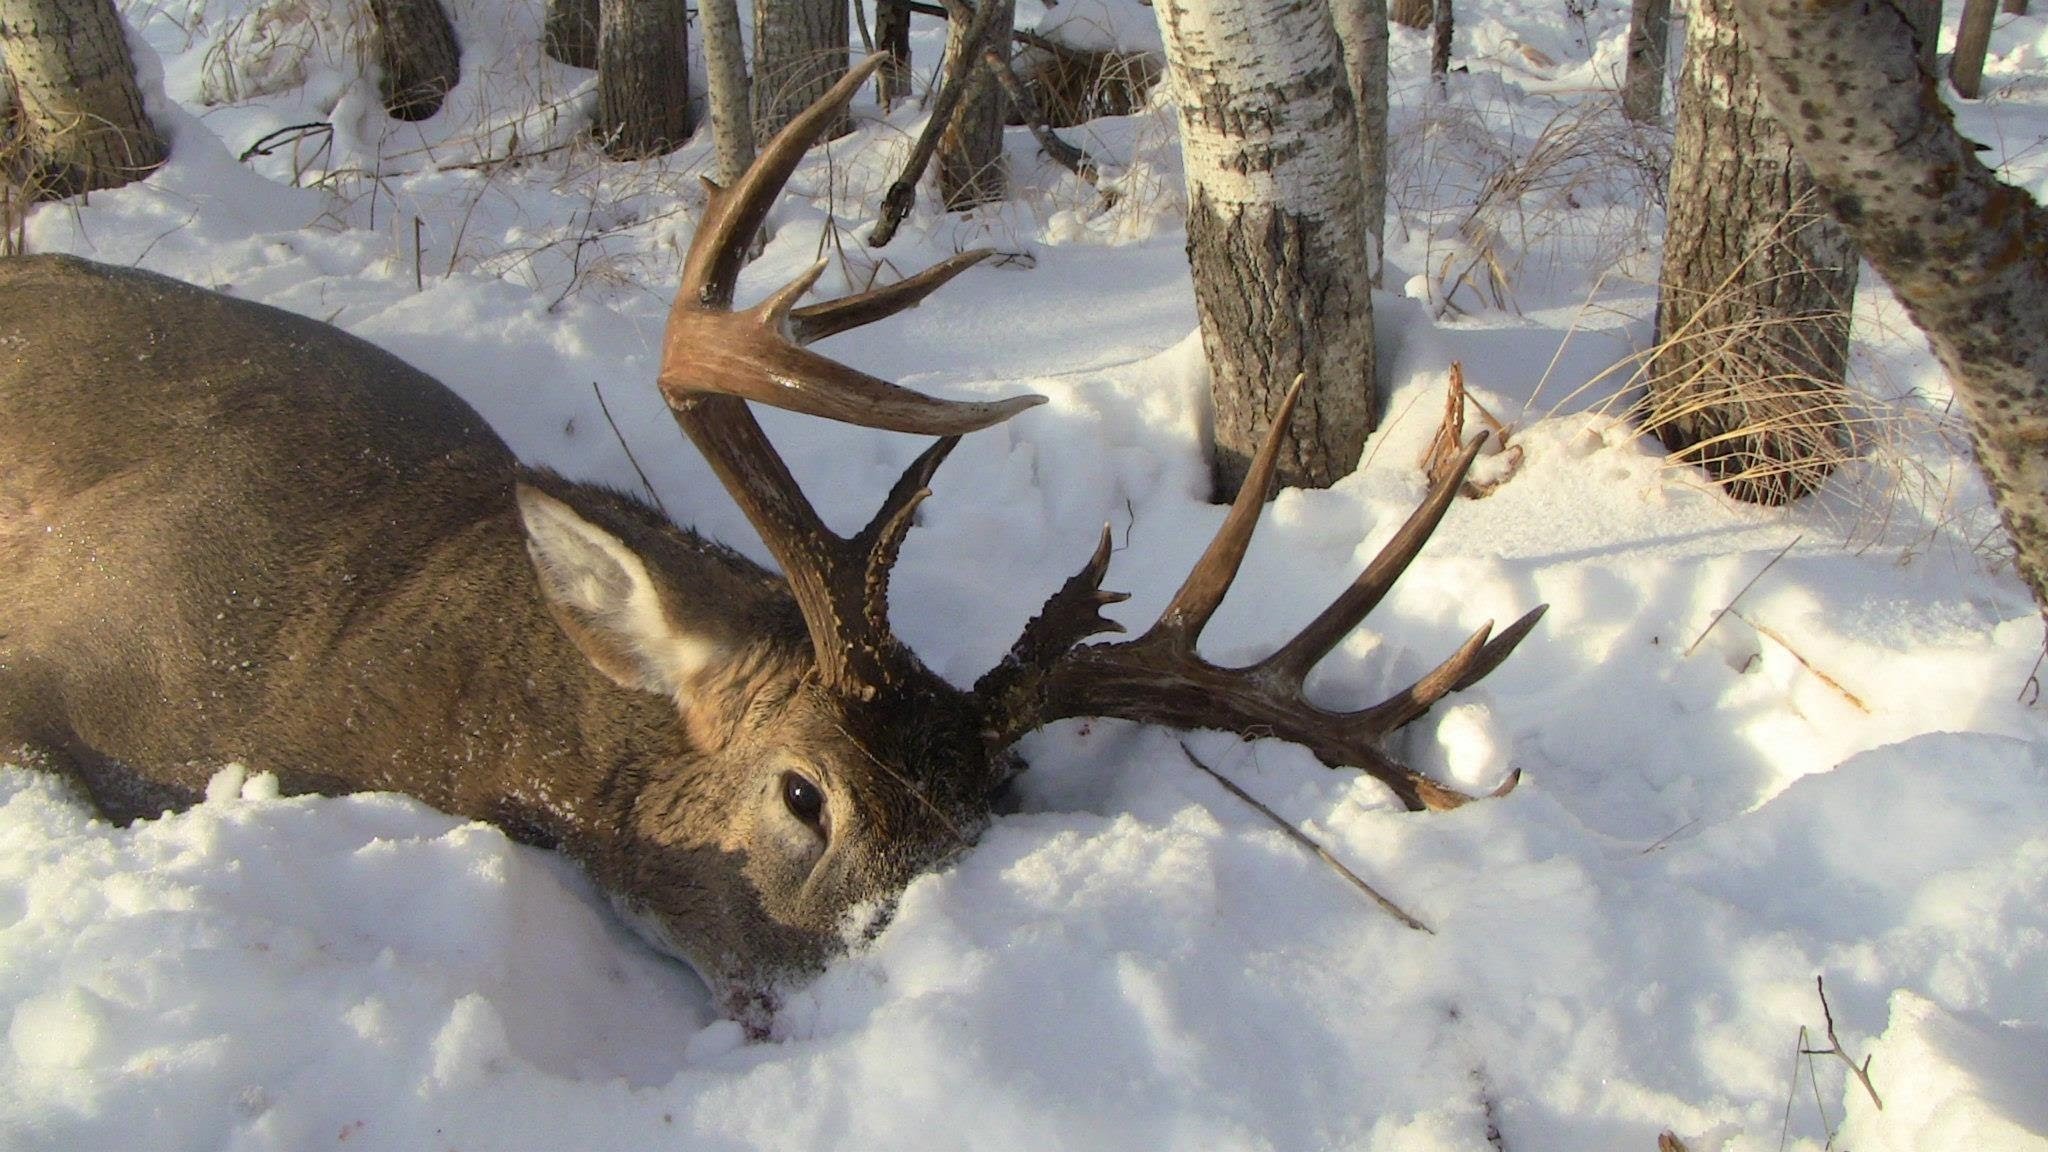 2048x1152, Whitetail Deer Wallpaper Luxury Deer Hunting - Whitetail Deer Shot In Snow - HD Wallpaper 